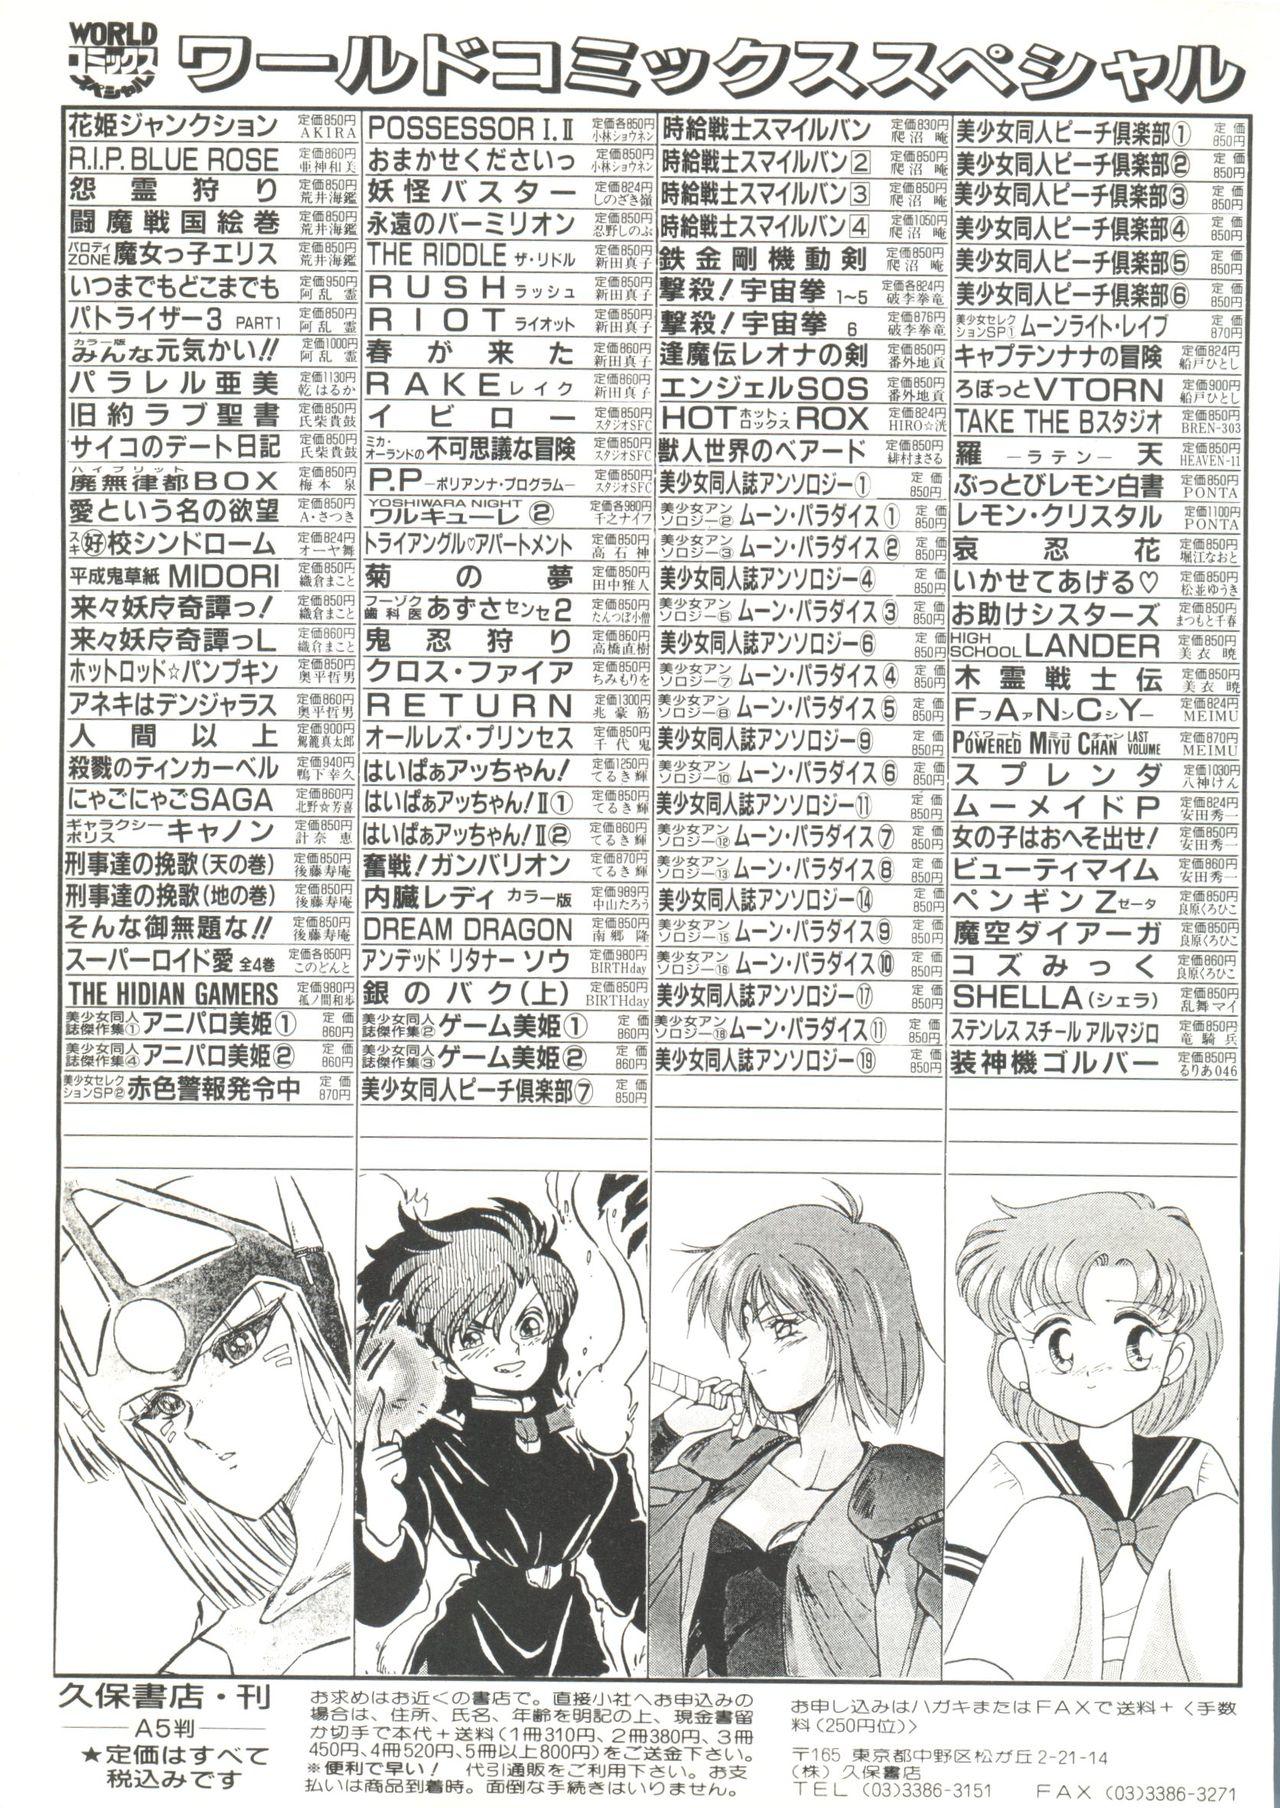 Gay Cut Bishoujo Doujin Peach Club - Pretty Gal's Fanzine Peach Club 8 - Sailor moon Samurai spirits Free Amateur - Page 143